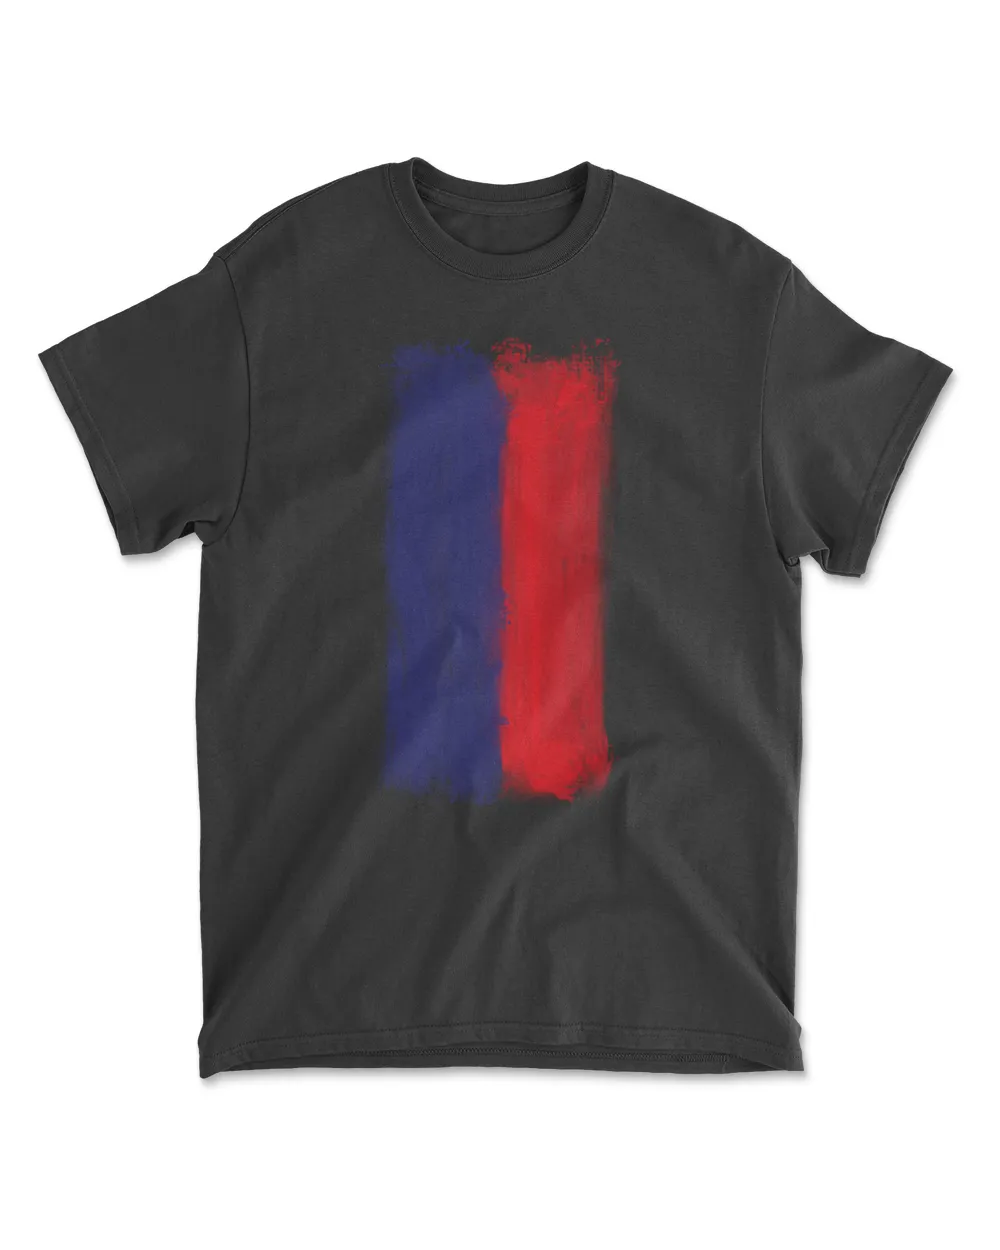 Liechtenstein T-Shirt